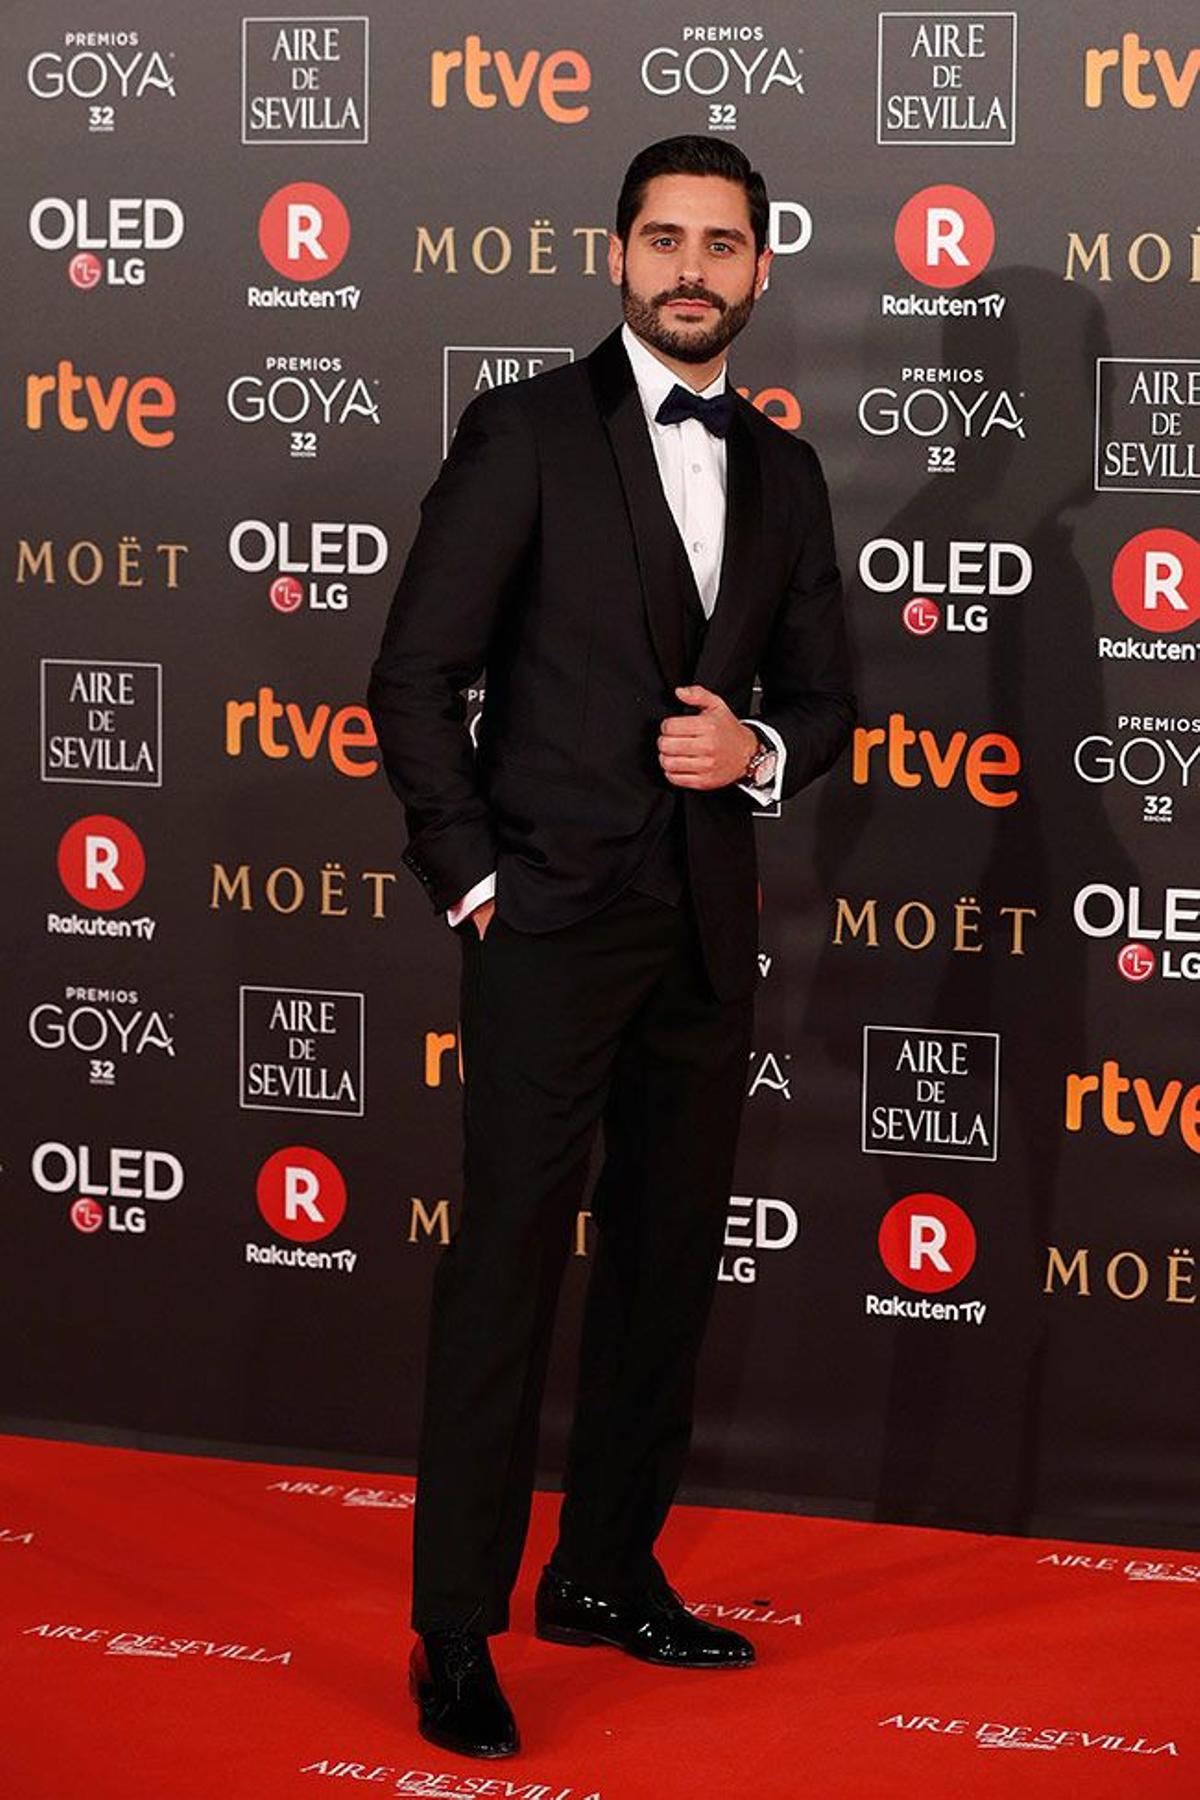 Premios Goya 2018, Miguel Diosdado